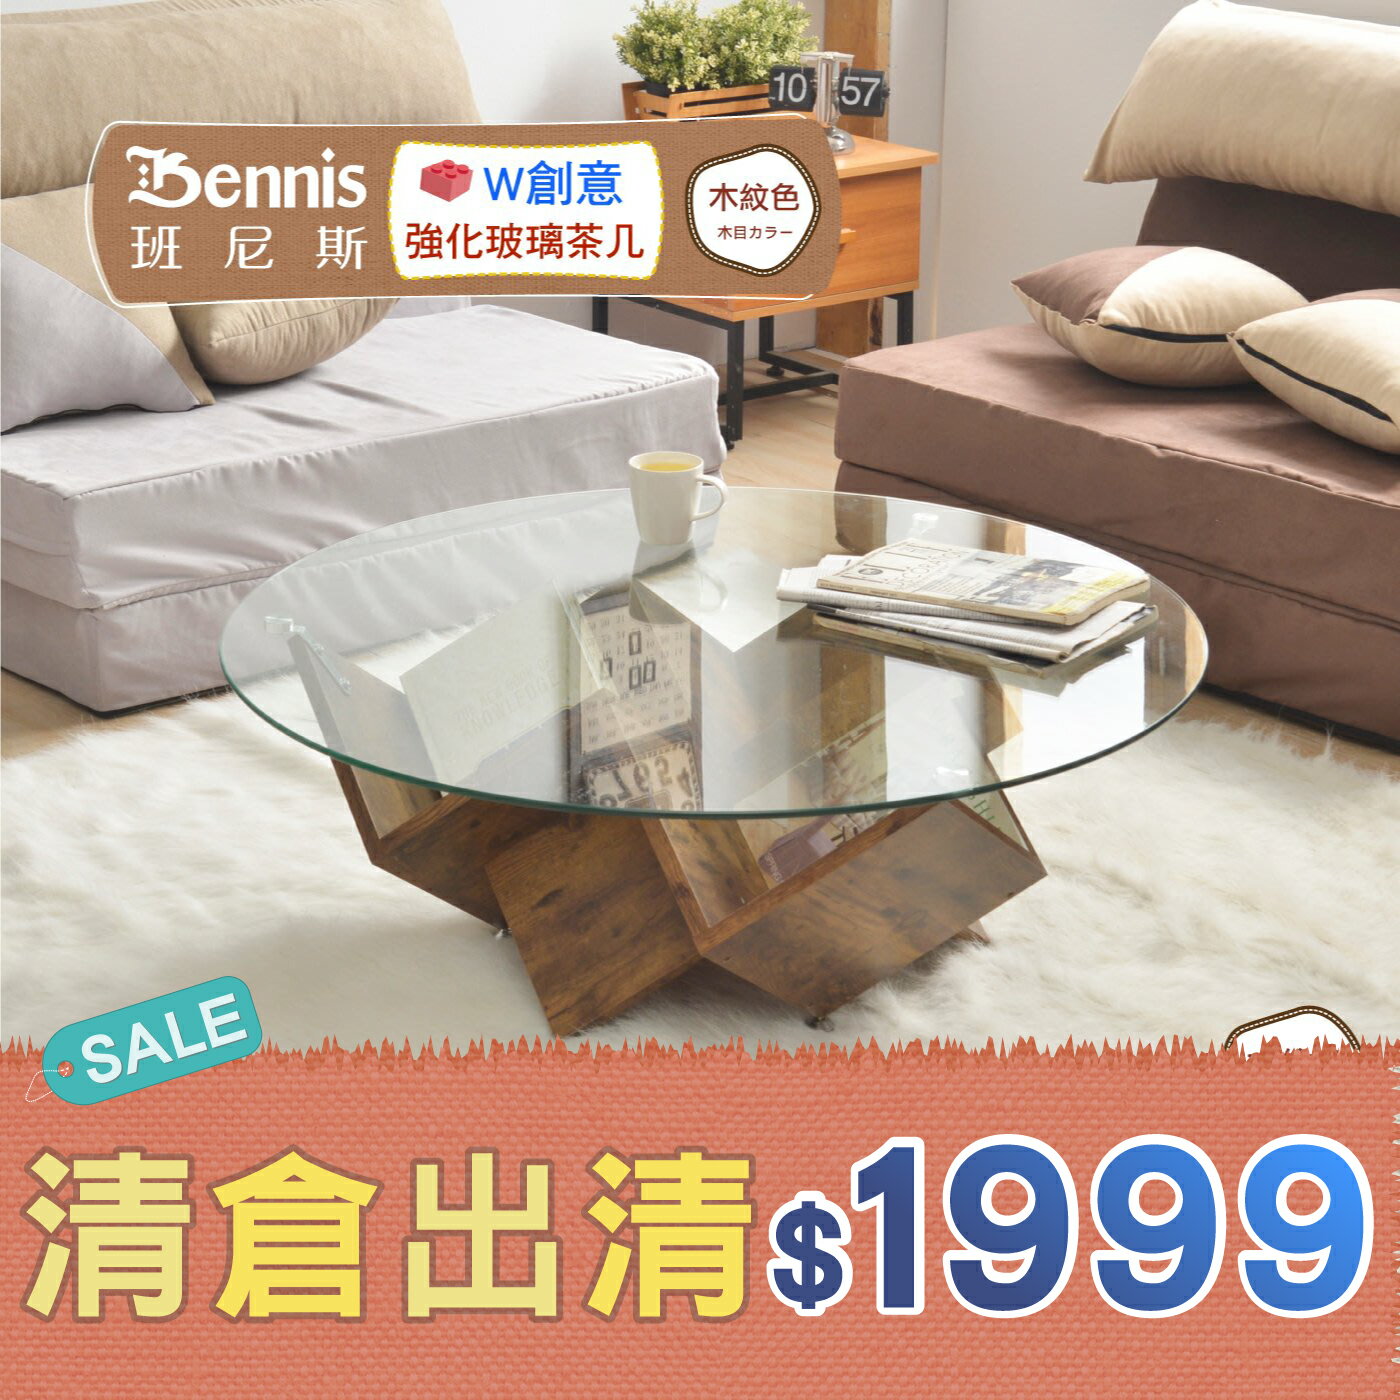 W創意強化玻璃茶几 造型茶几/客廳桌/圓桌 台灣熱銷款 /班尼斯國際名床